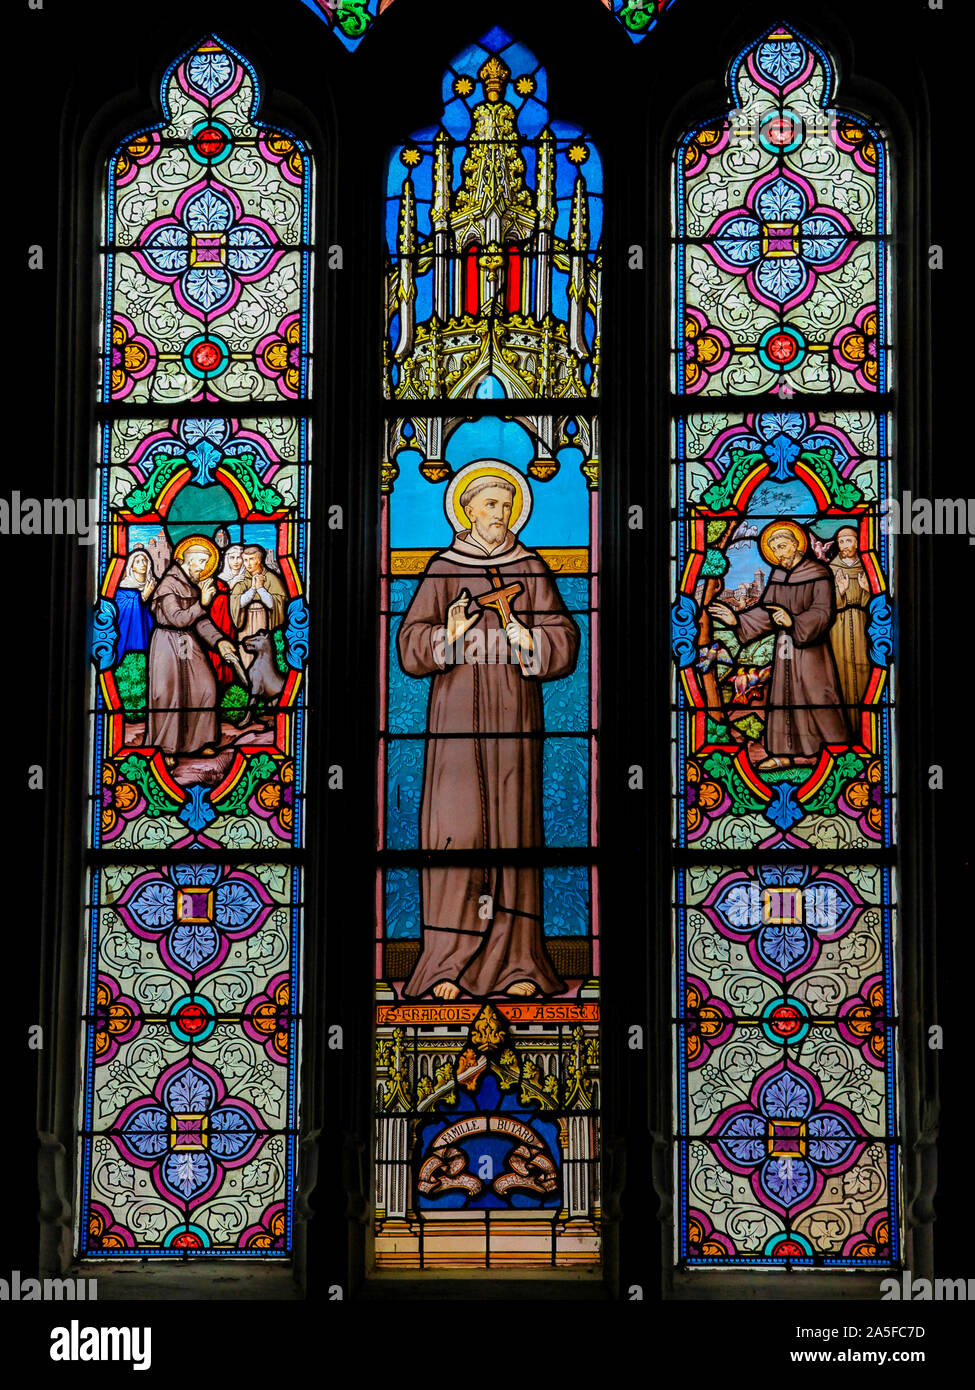 Vitraux dans l'église de St Martin à St Valery sur Somme, France, représentant Saint François d'assise Banque D'Images